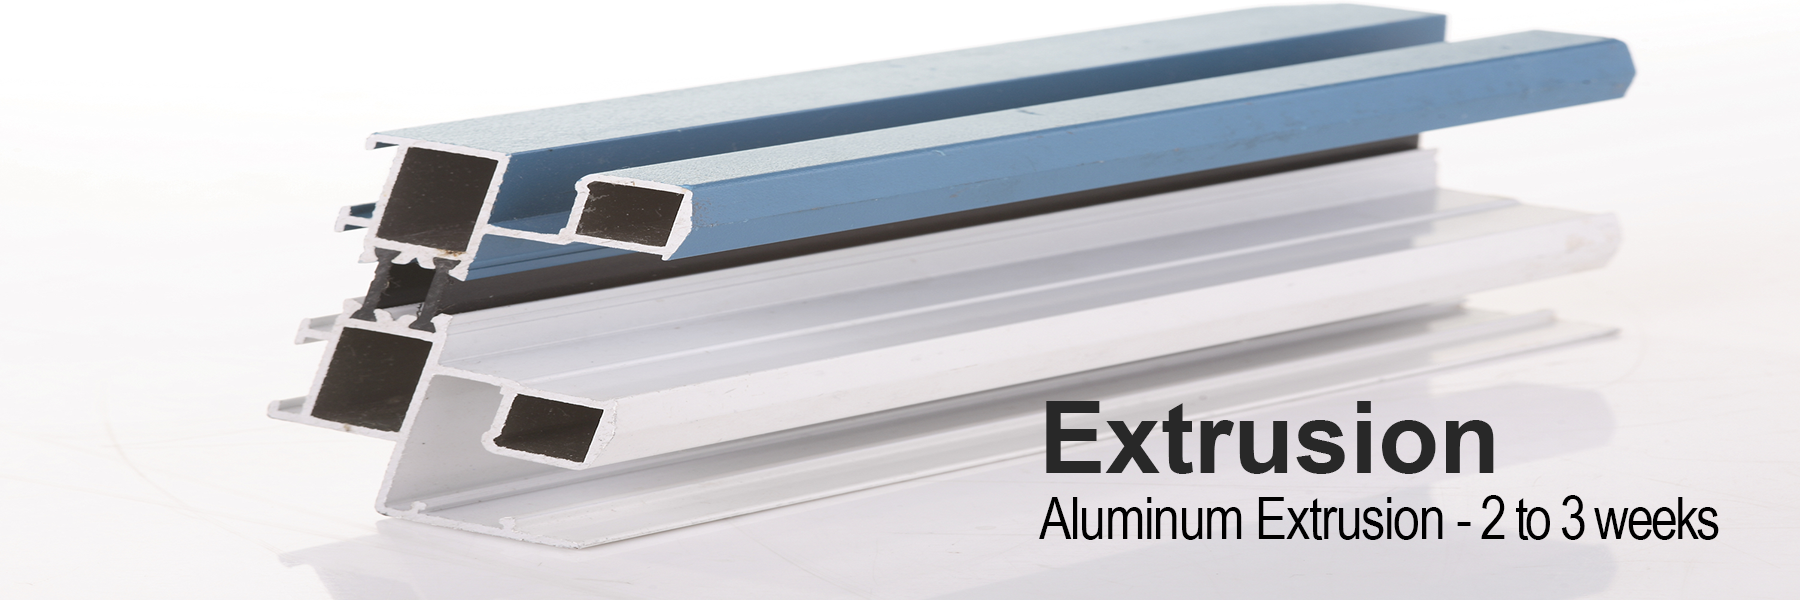 Rapid Aluminum Extrusion